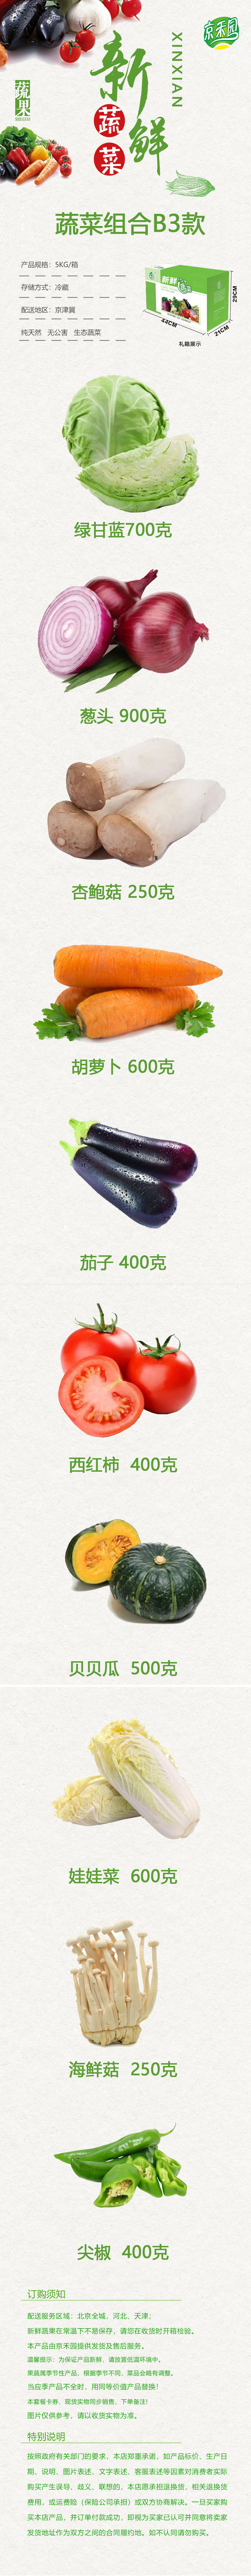  【北京馆】【京郊农品】京禾园蔬菜B3组合混装菜 约10斤 农家自产